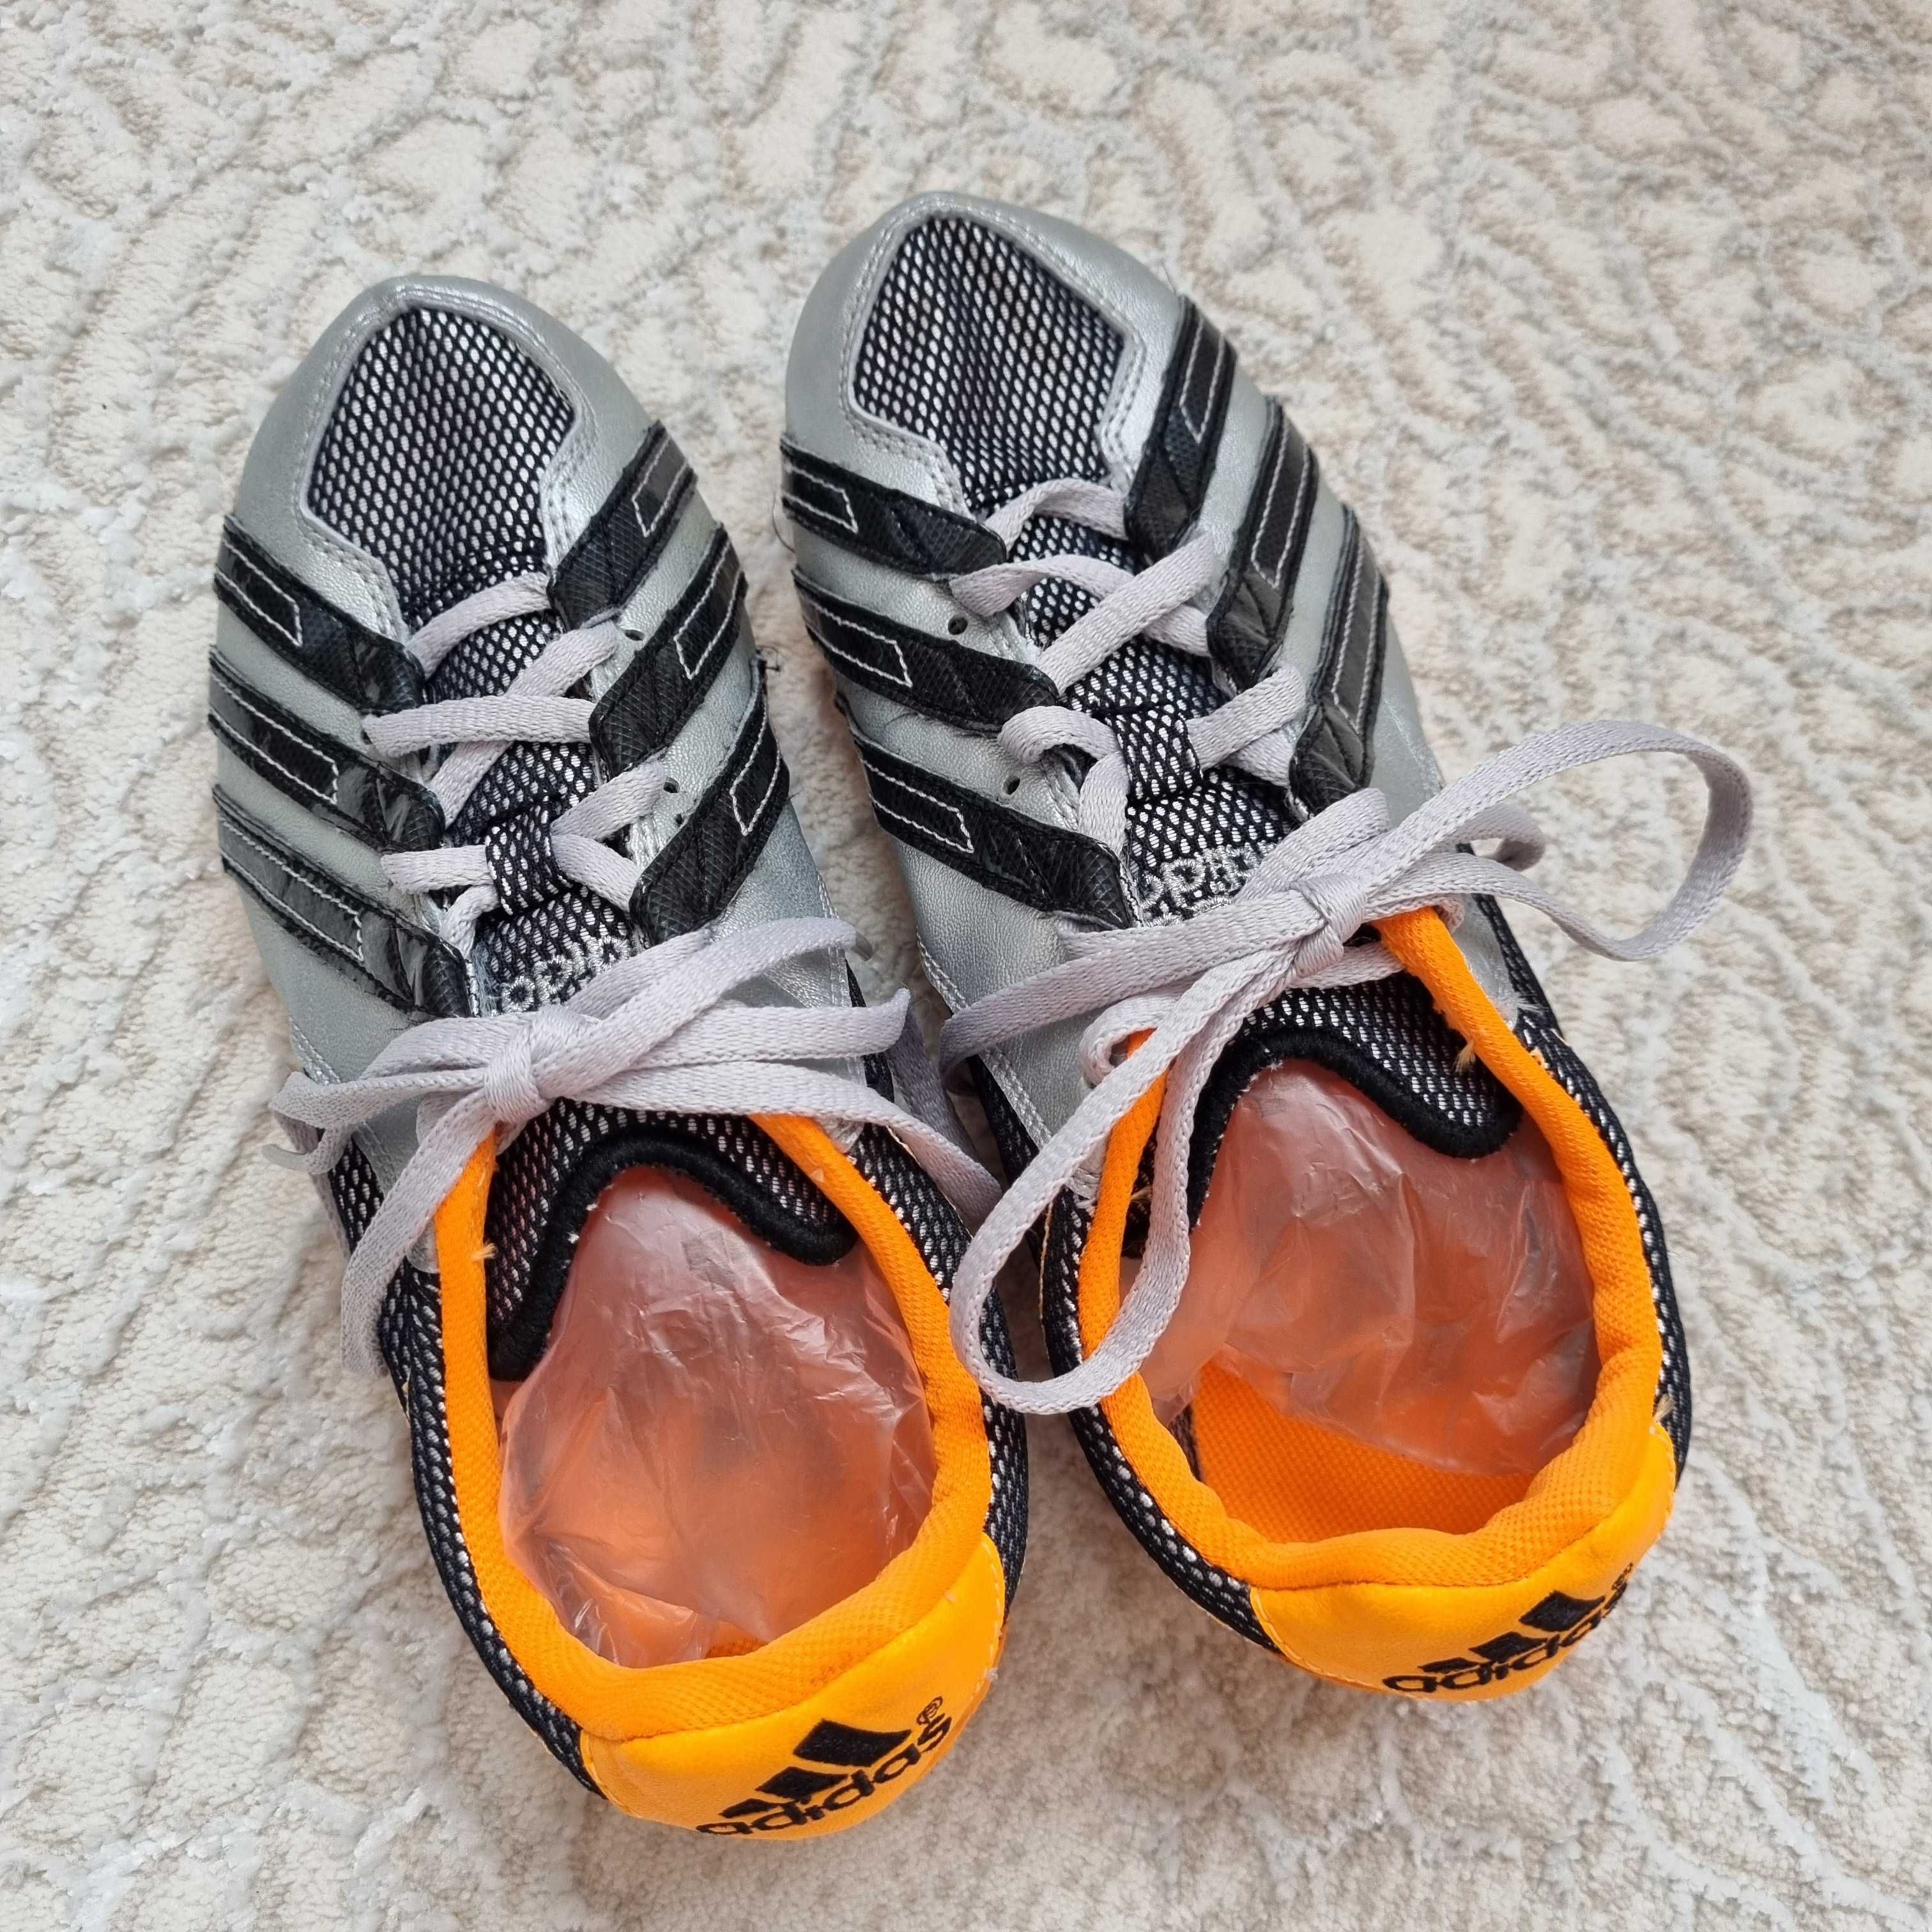 Kolce lekkoatletyczne sprinterskie, buty do biegania Adidas rozmiar 38